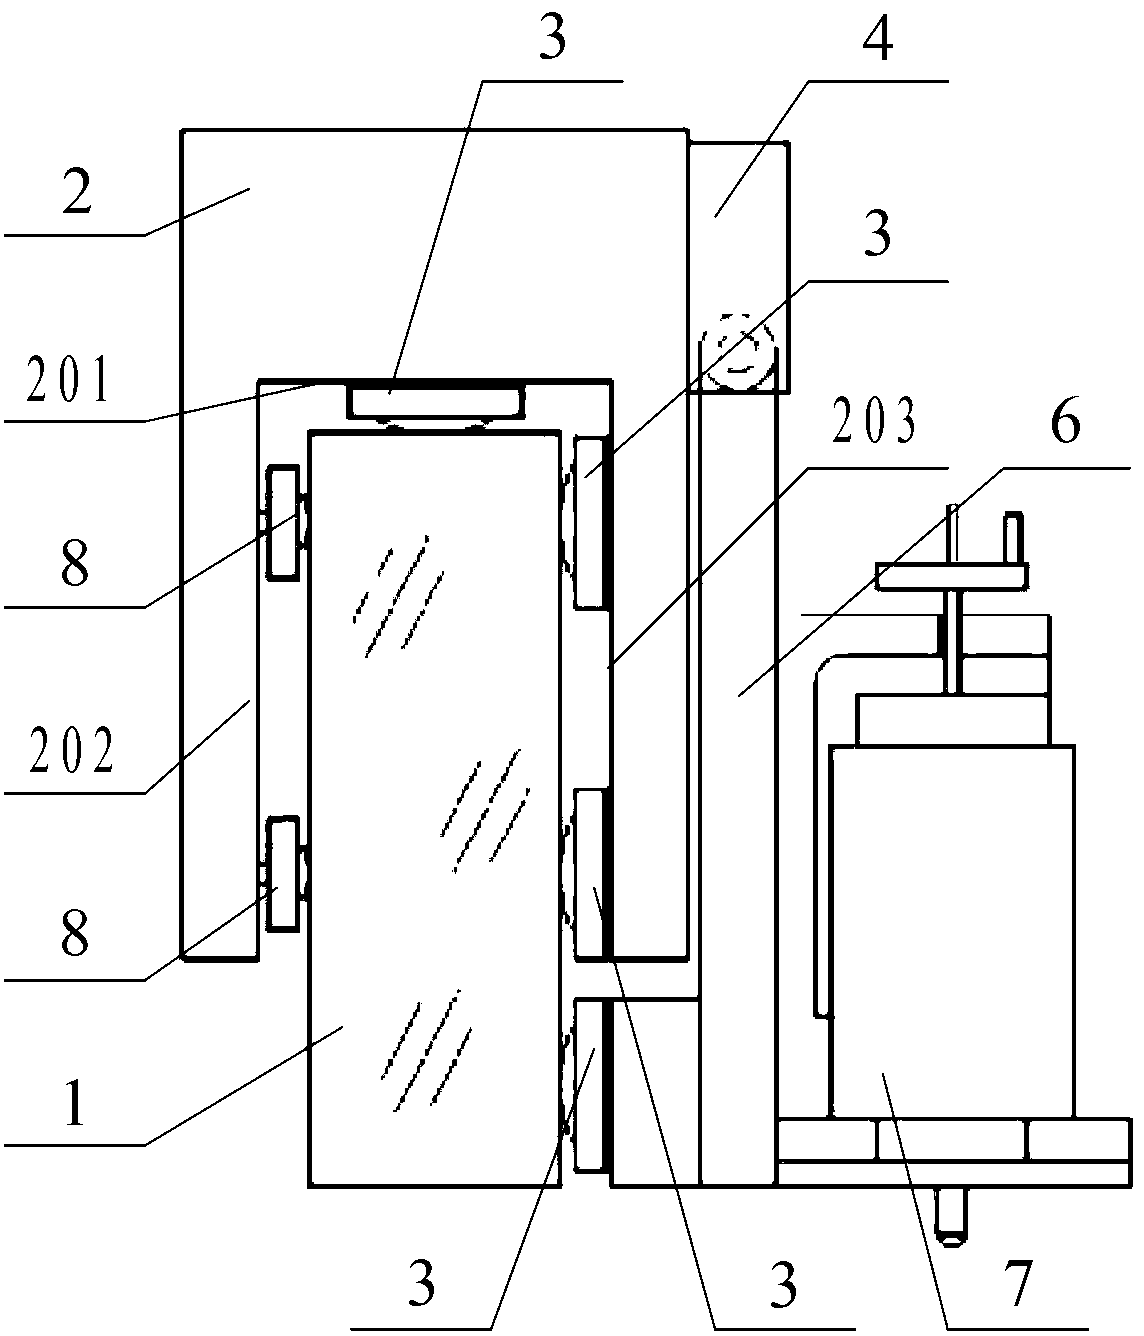 Cutter frame system of grating ruling engine